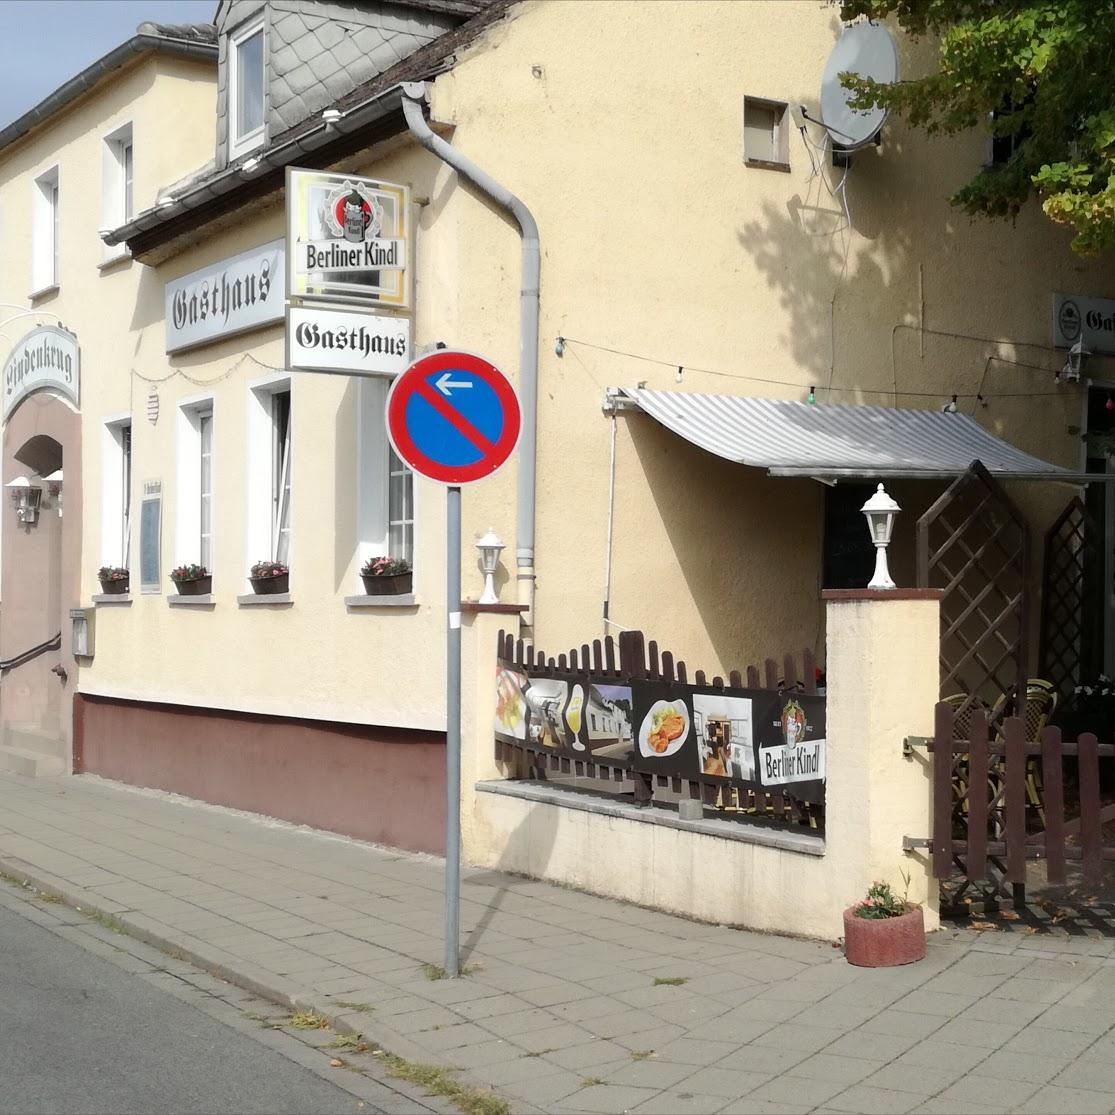 Restaurant "Restaurant Zum kleinen Seehaus" in  Münsing